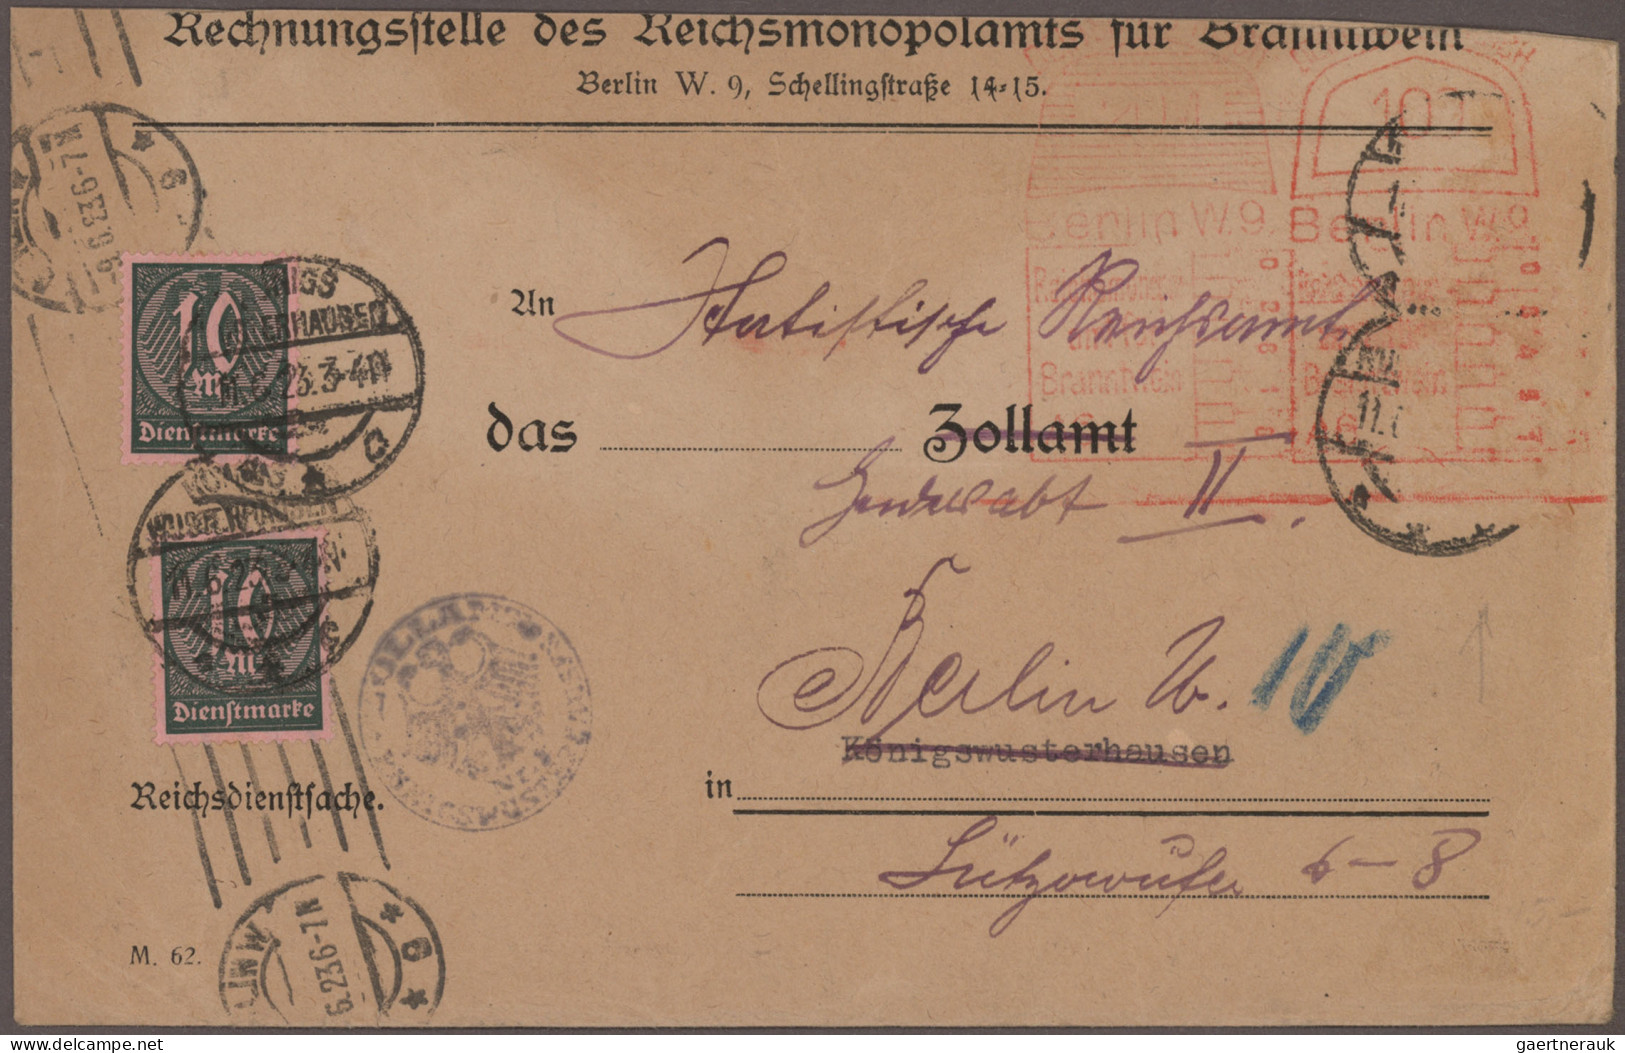 Deutsches Reich - Inflation: 1917/1923, Absenderfreistempel, Sammlung von ca. 42